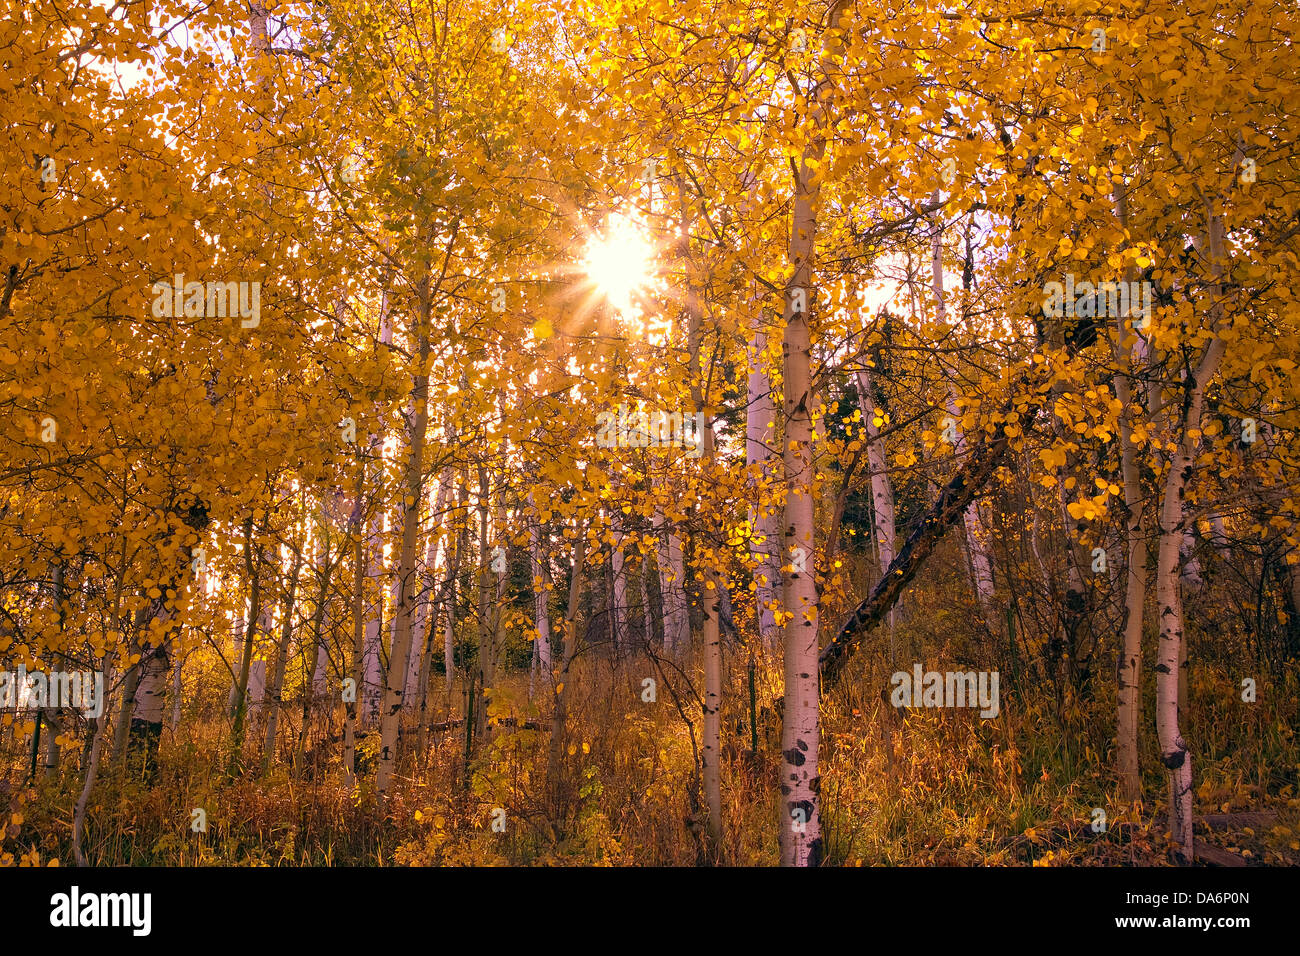 USA, United States, Amérique, Colorado, l'automne, l'automne, la couleur de l'automne, saisons, trembles, National Forest, Gunnison, montagnes Rocheuses, Ro Banque D'Images